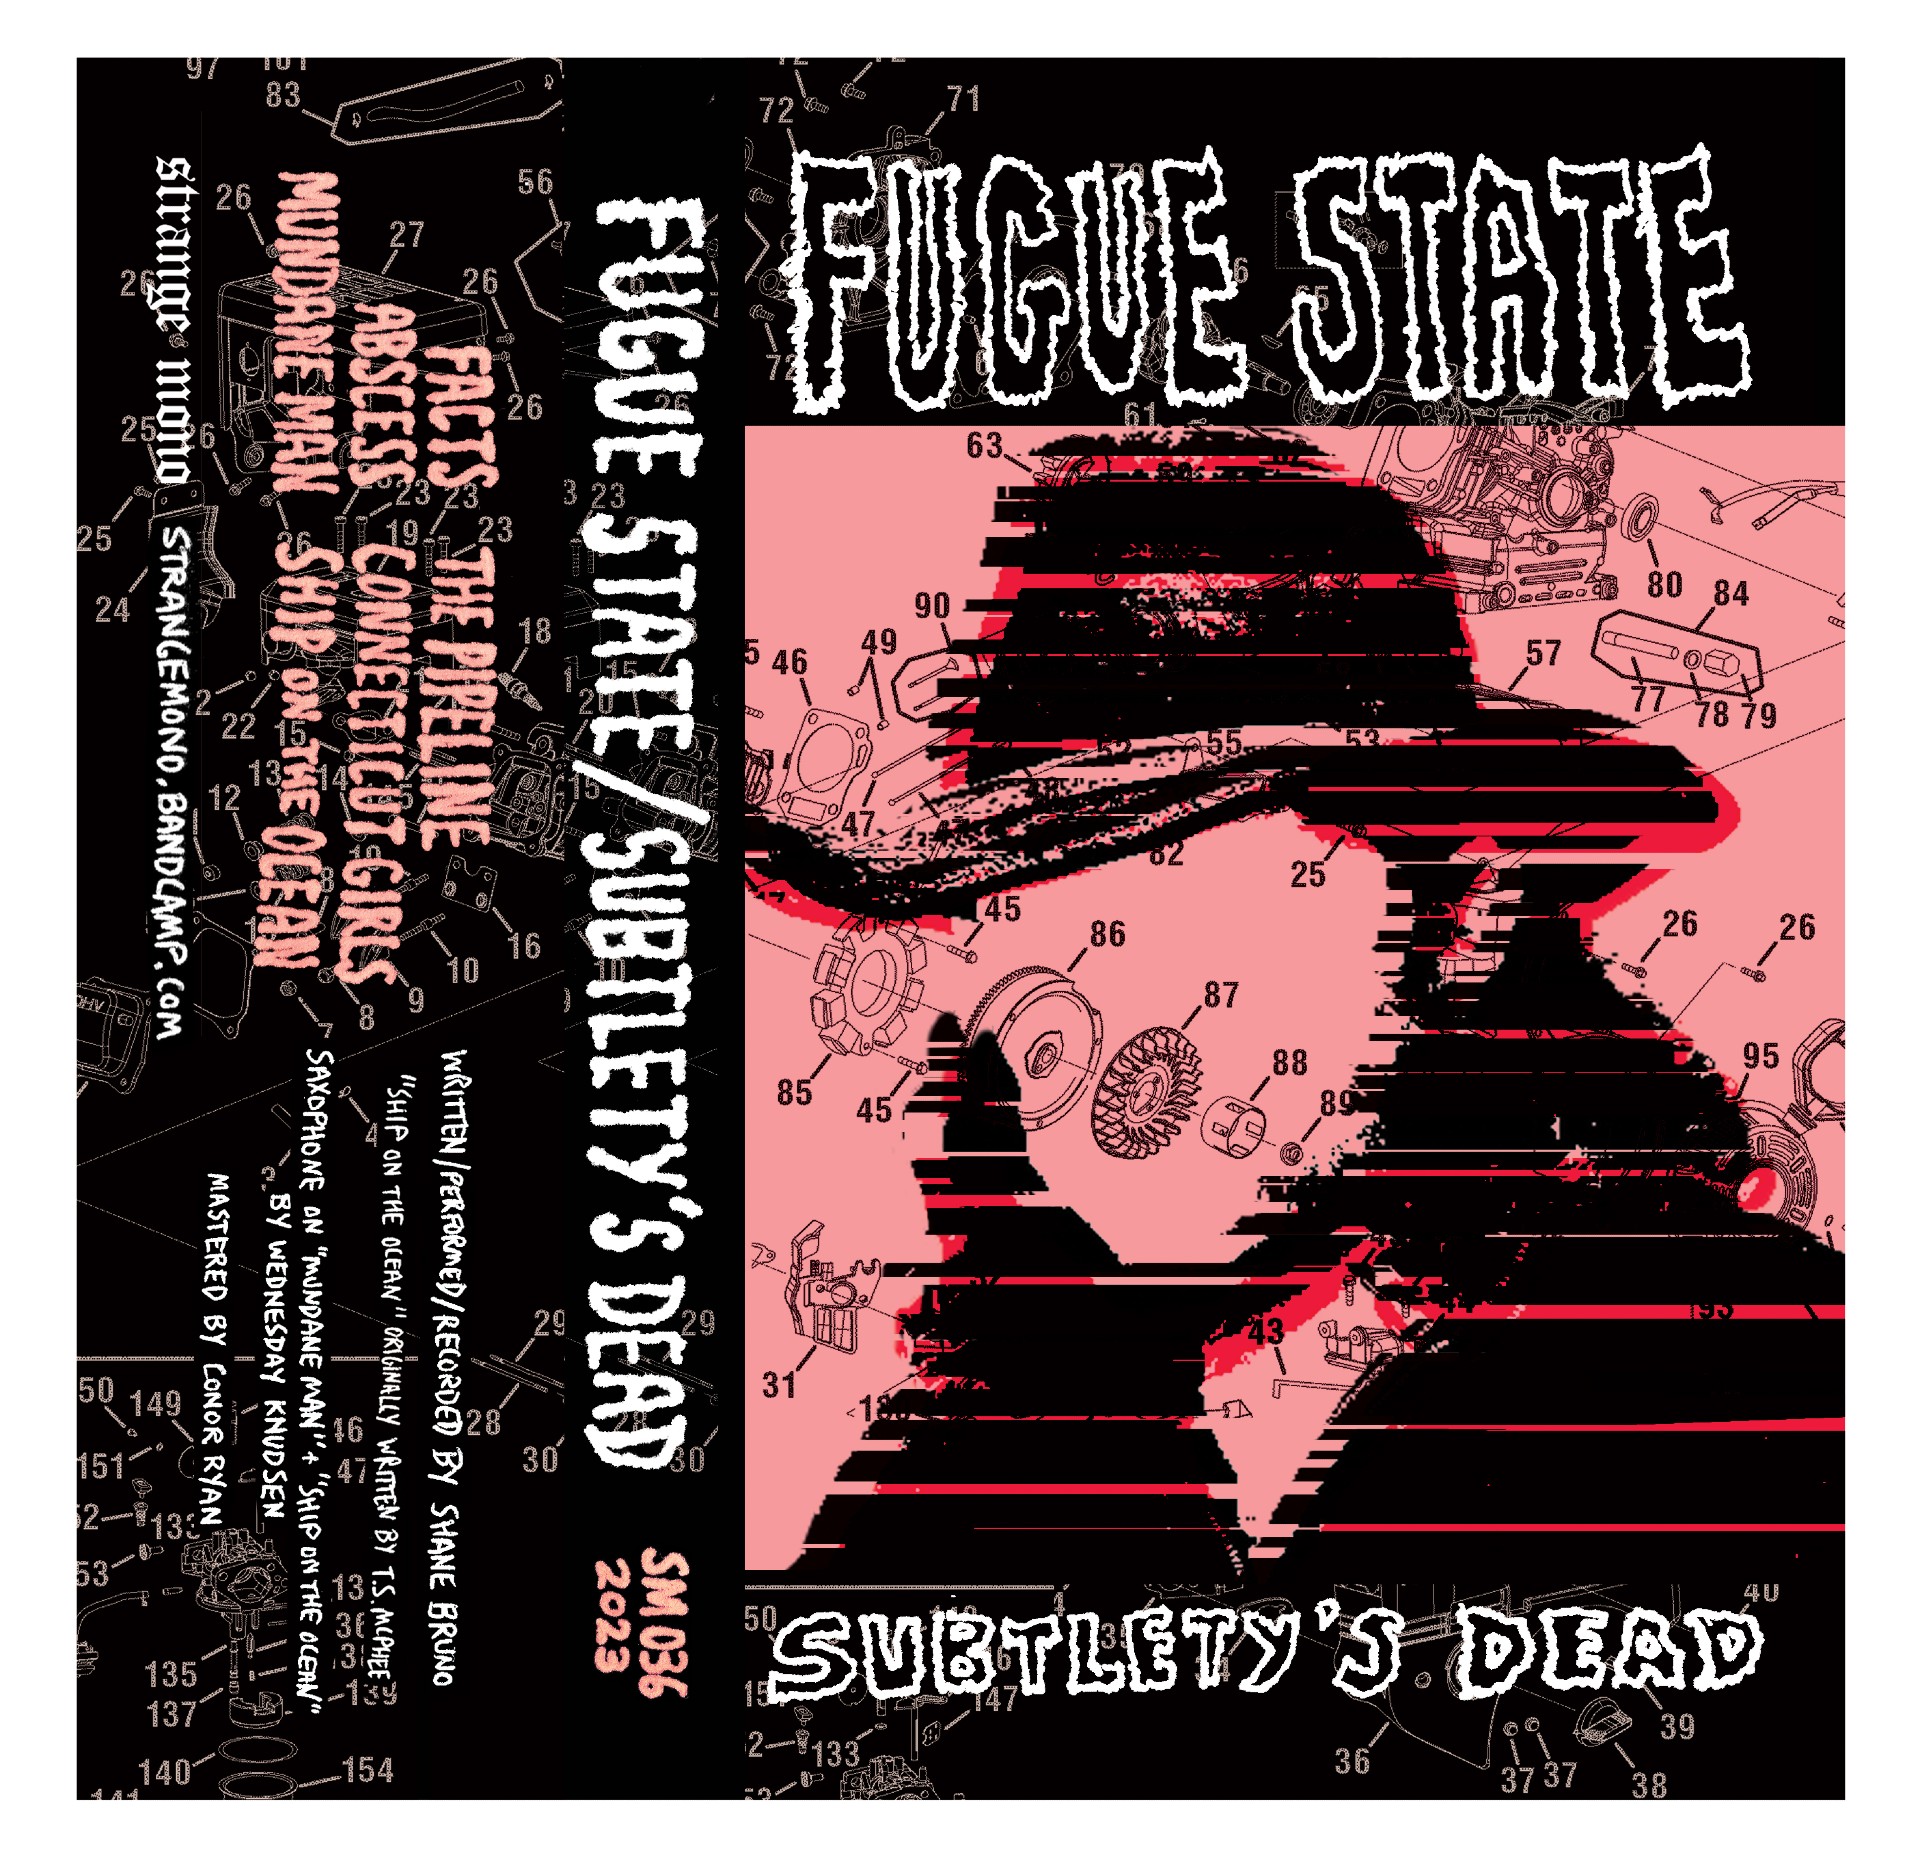 Fugue State ‘Subtlety’s Dead’ EP album artwork